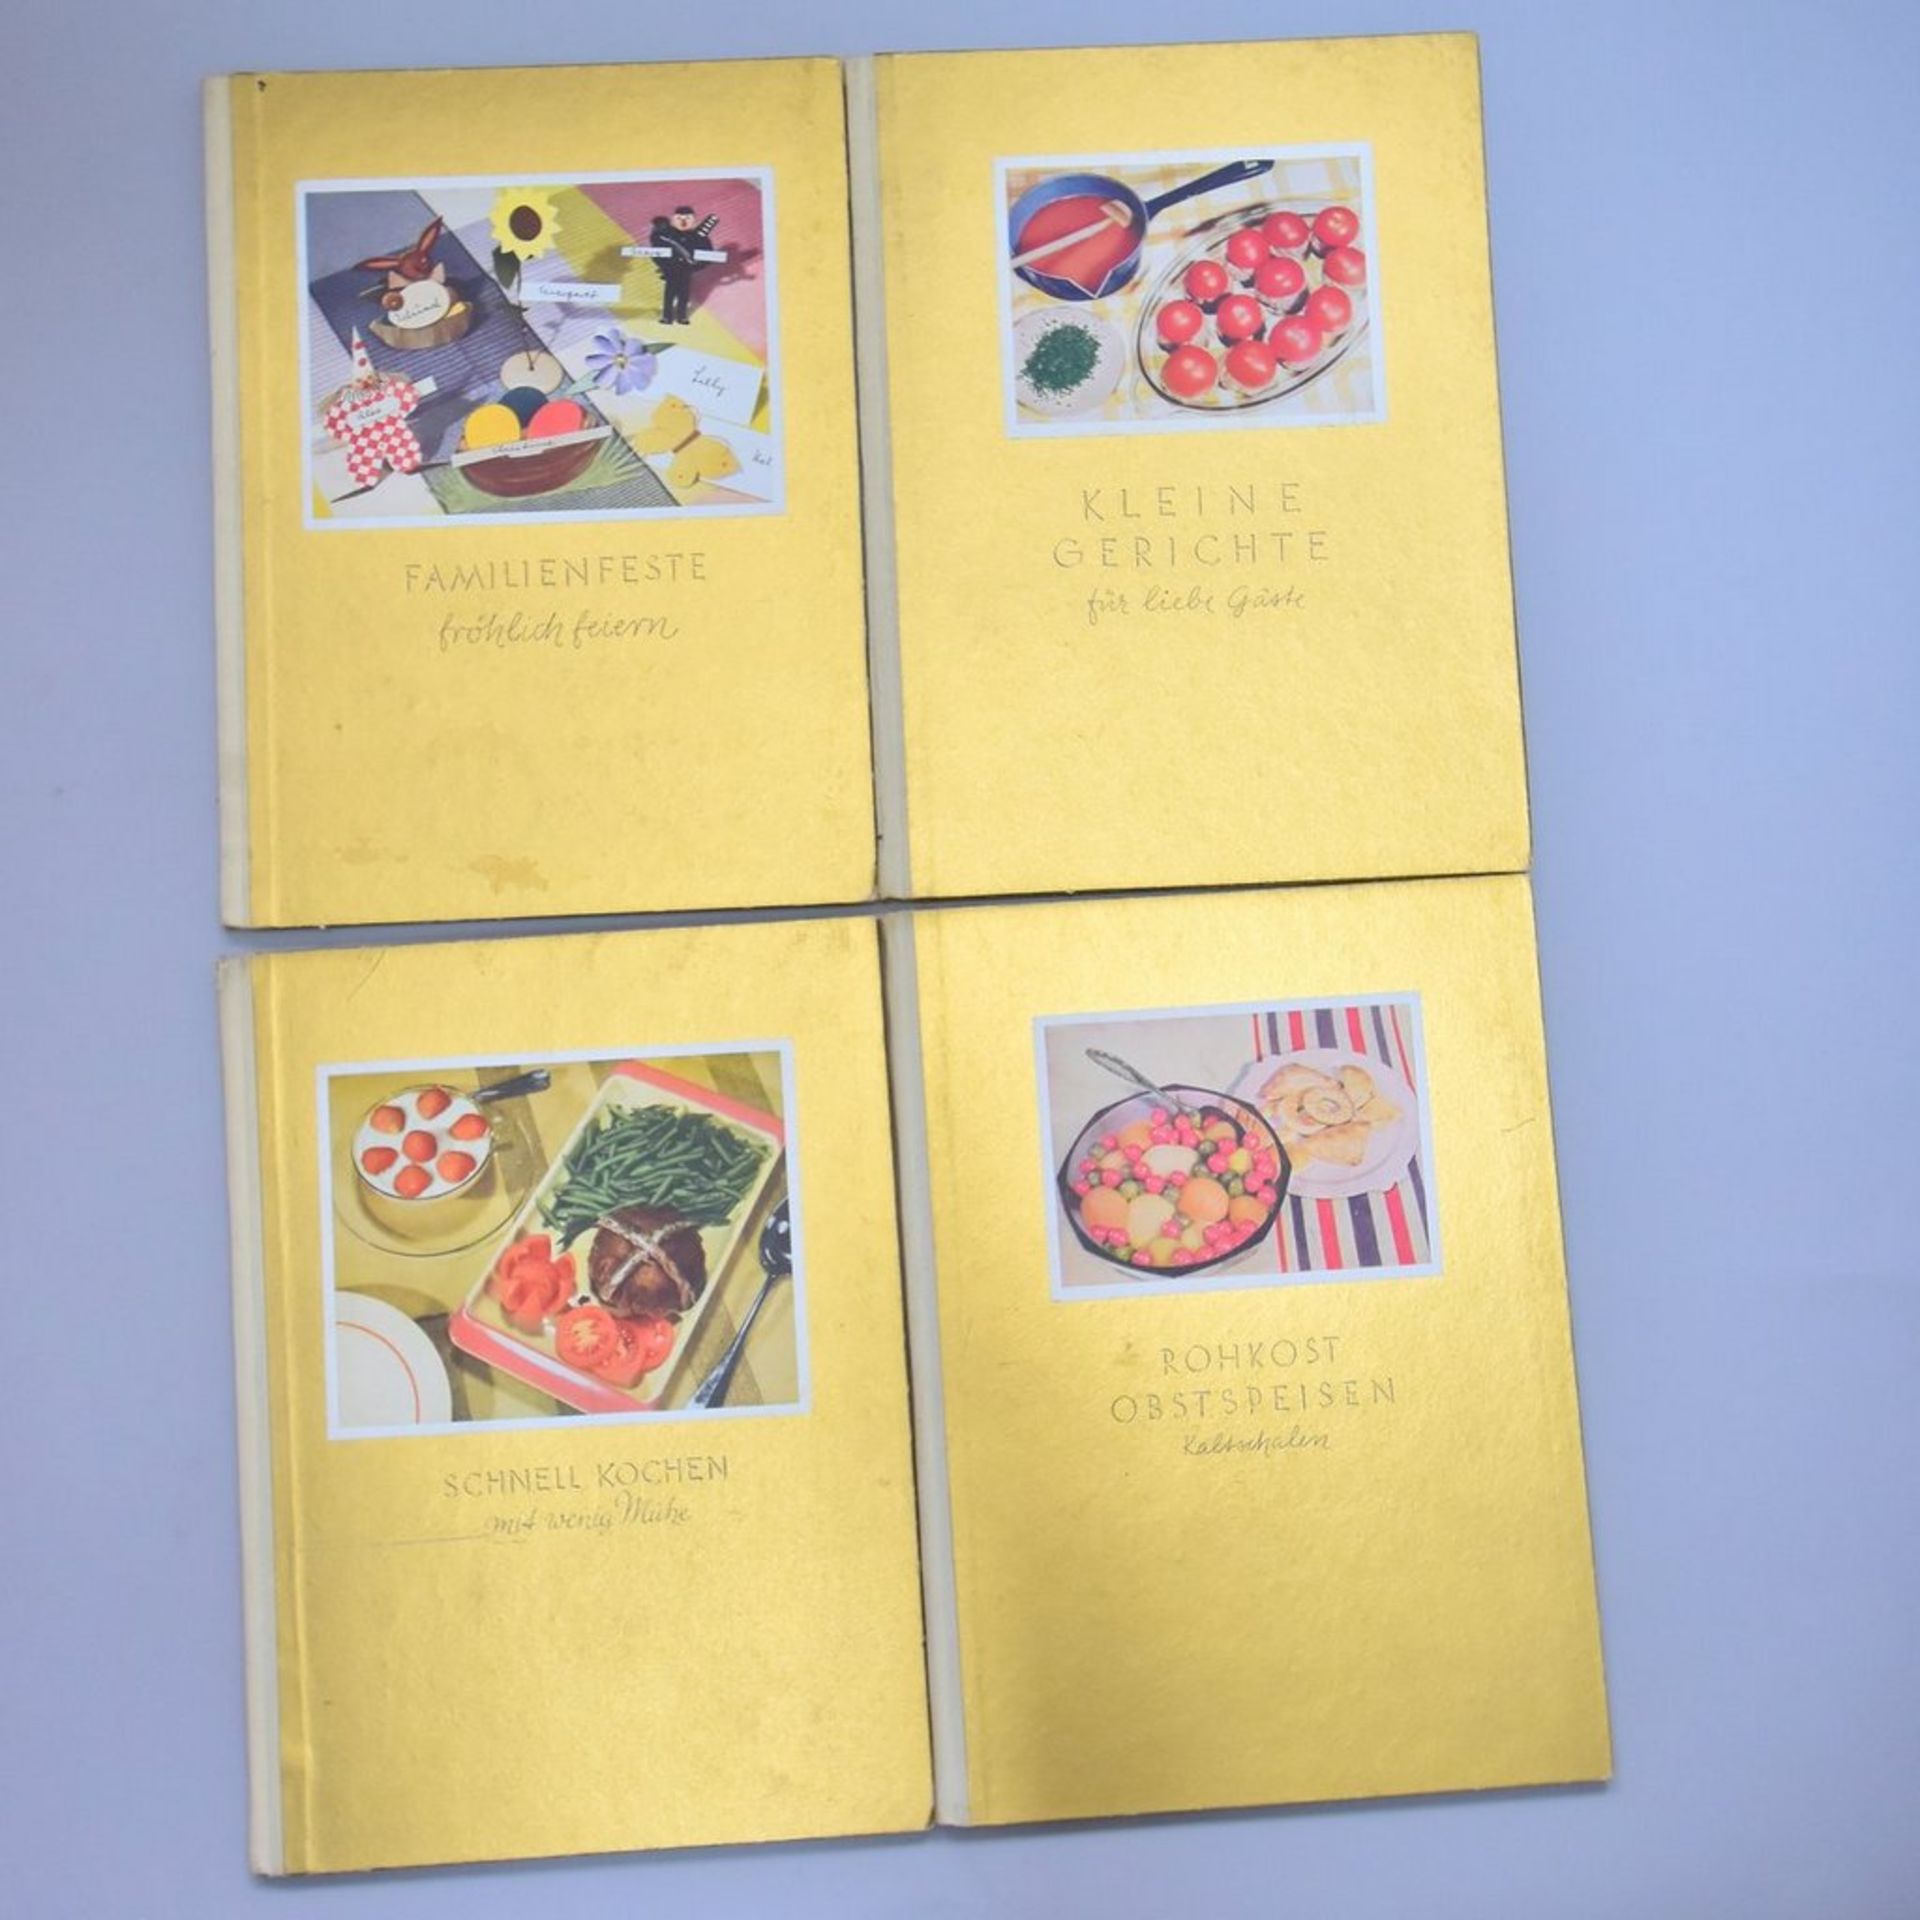 4 Stk Kochbücher von 1936, "Schnell kochen m. wenig Mühe", "Rohkost, Obstspeisen, Kaltschalen", "